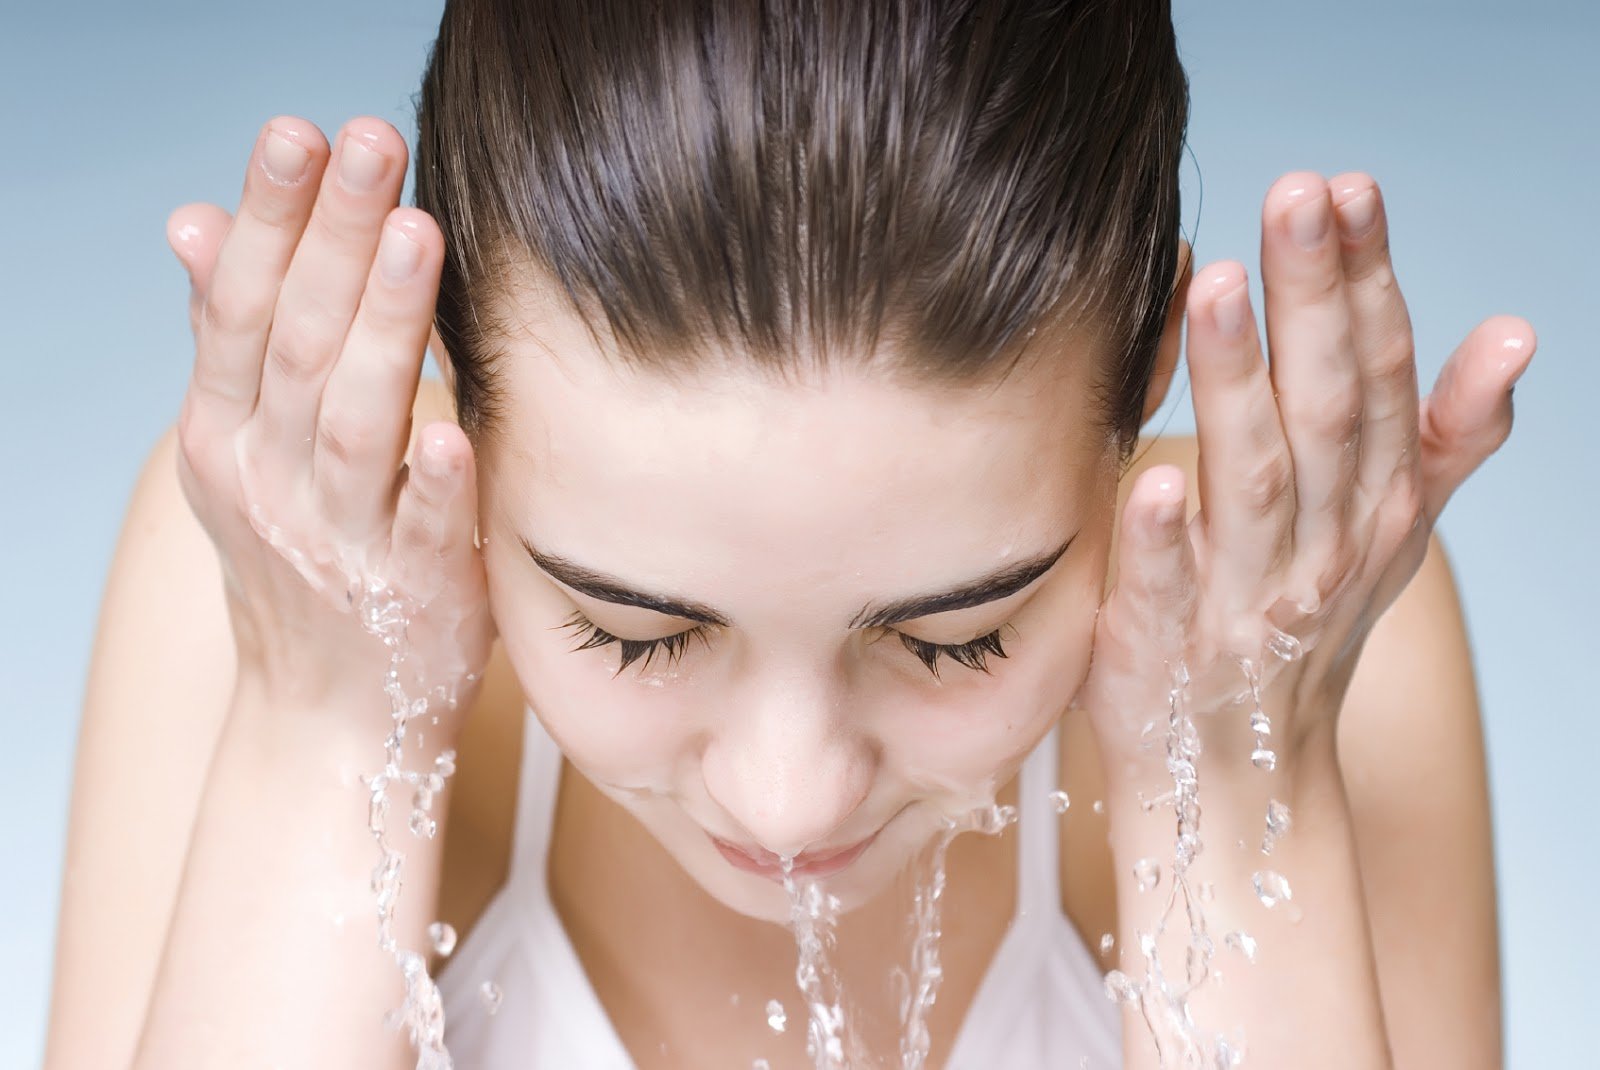 Nên rửa mặt lại với nước ấm, lau khô để đảm bảo loại sạch mọi bụi bẩn bám dính trên da sau khi xông